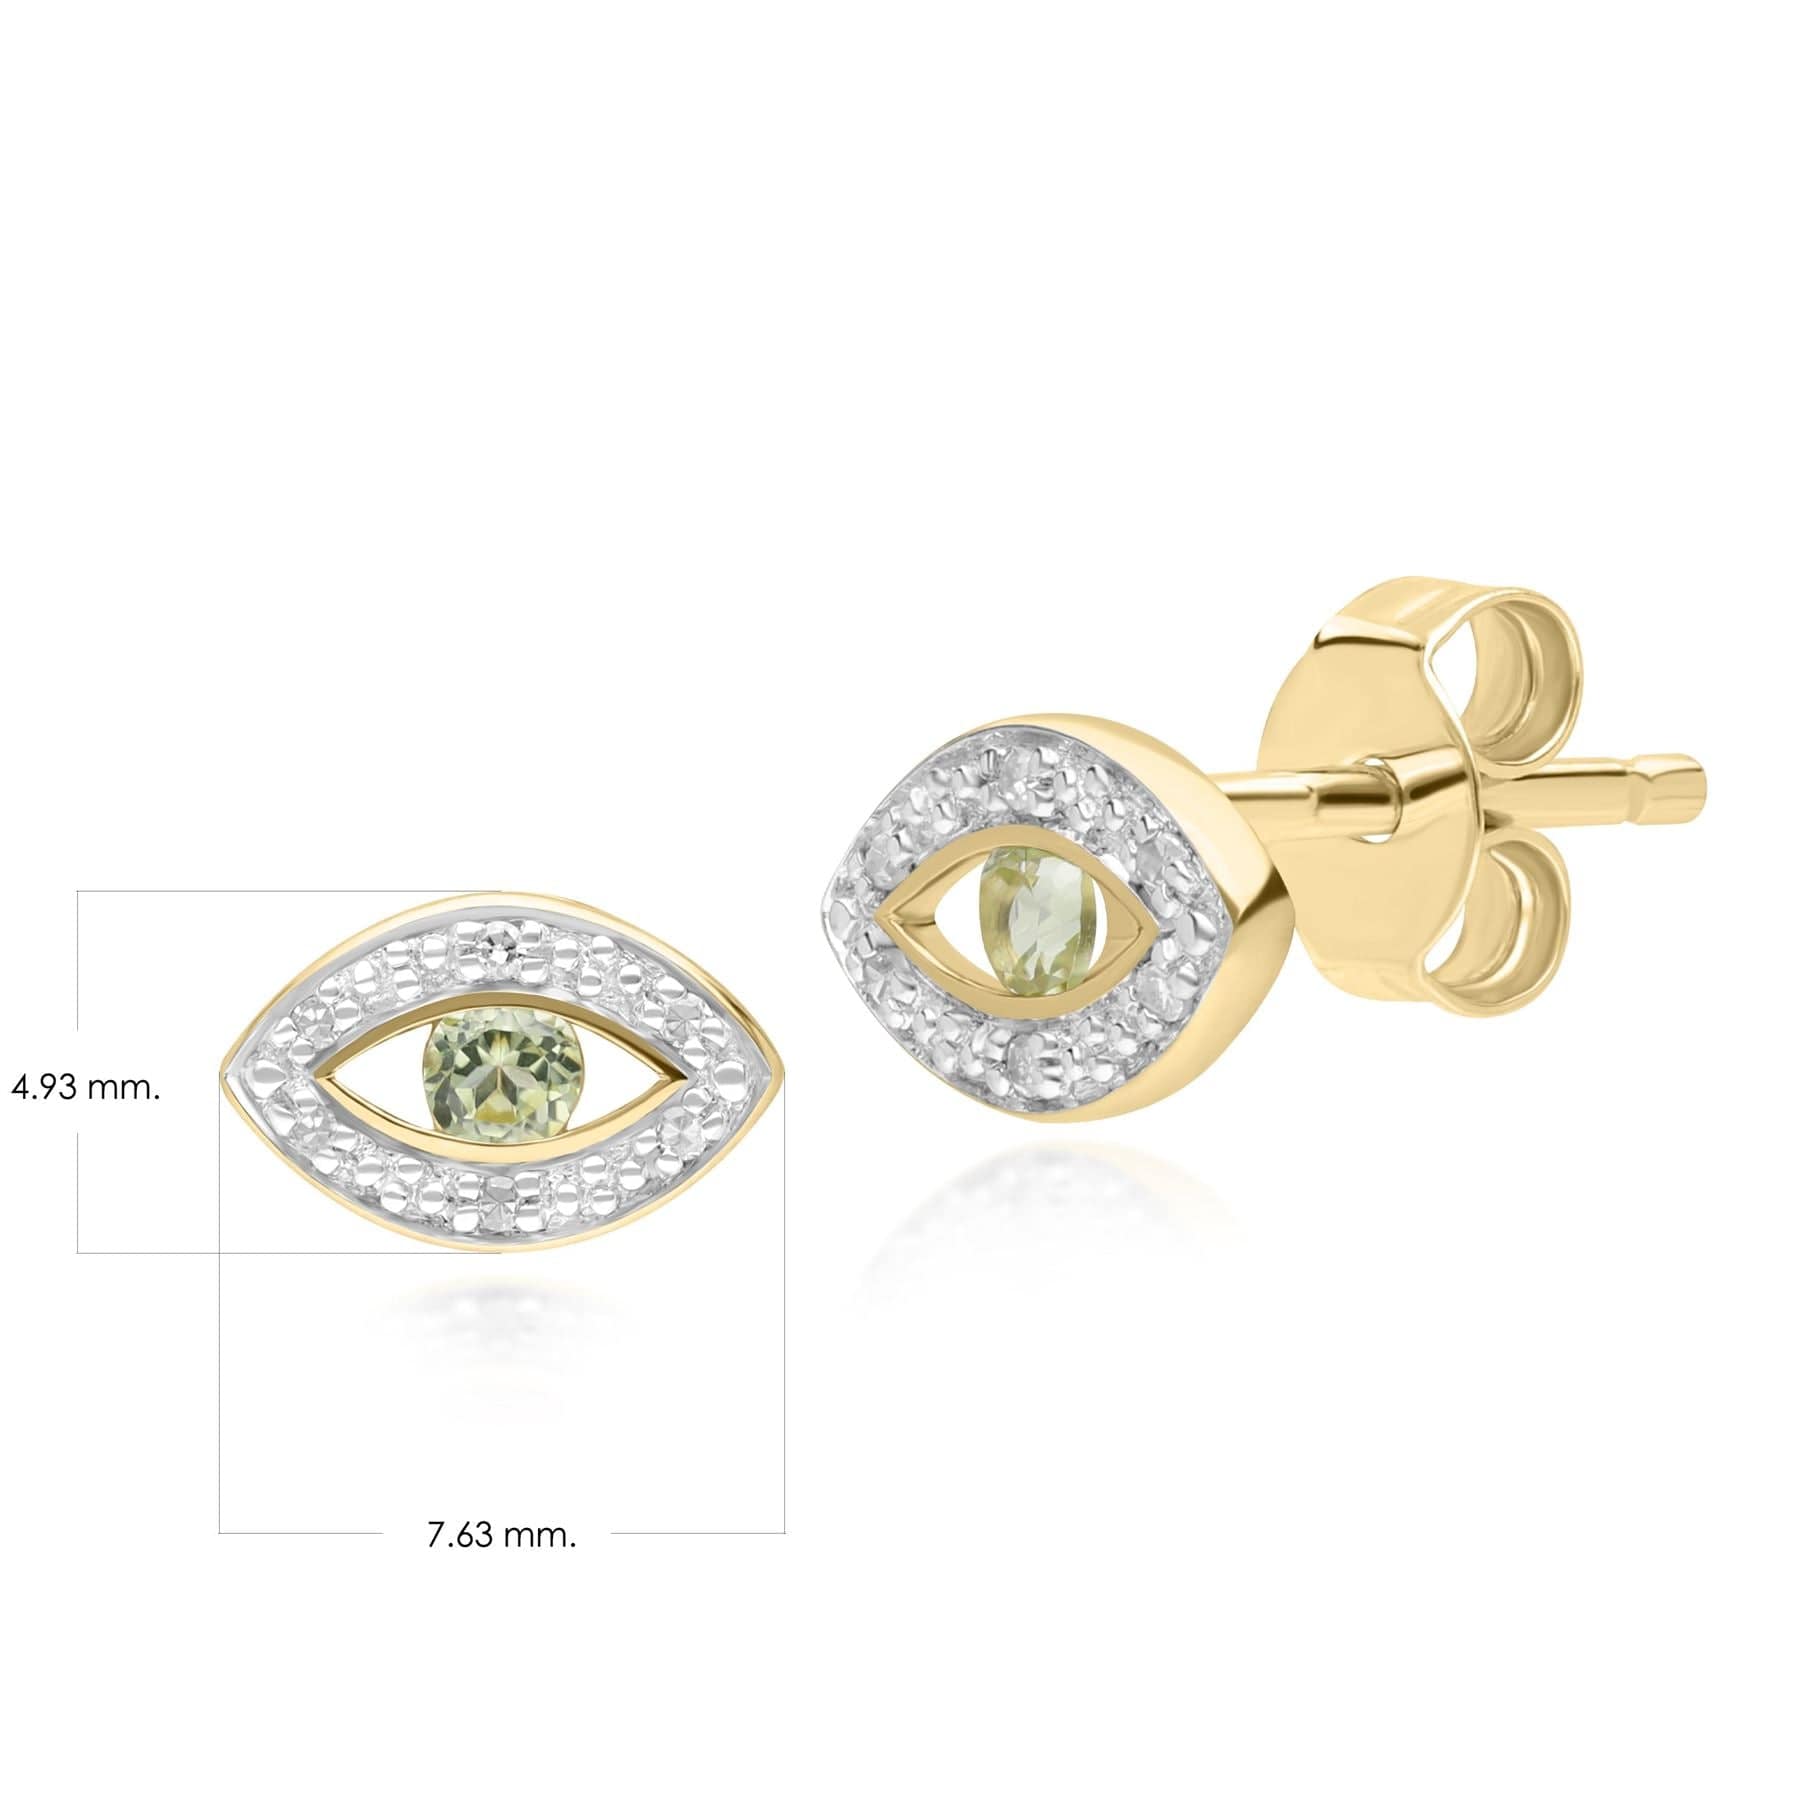 135E1824049 ECFEW™ Dainty Evil Eye Peridot & Diamond Stud Earrings in 9ct Yellow Gold Dimensions